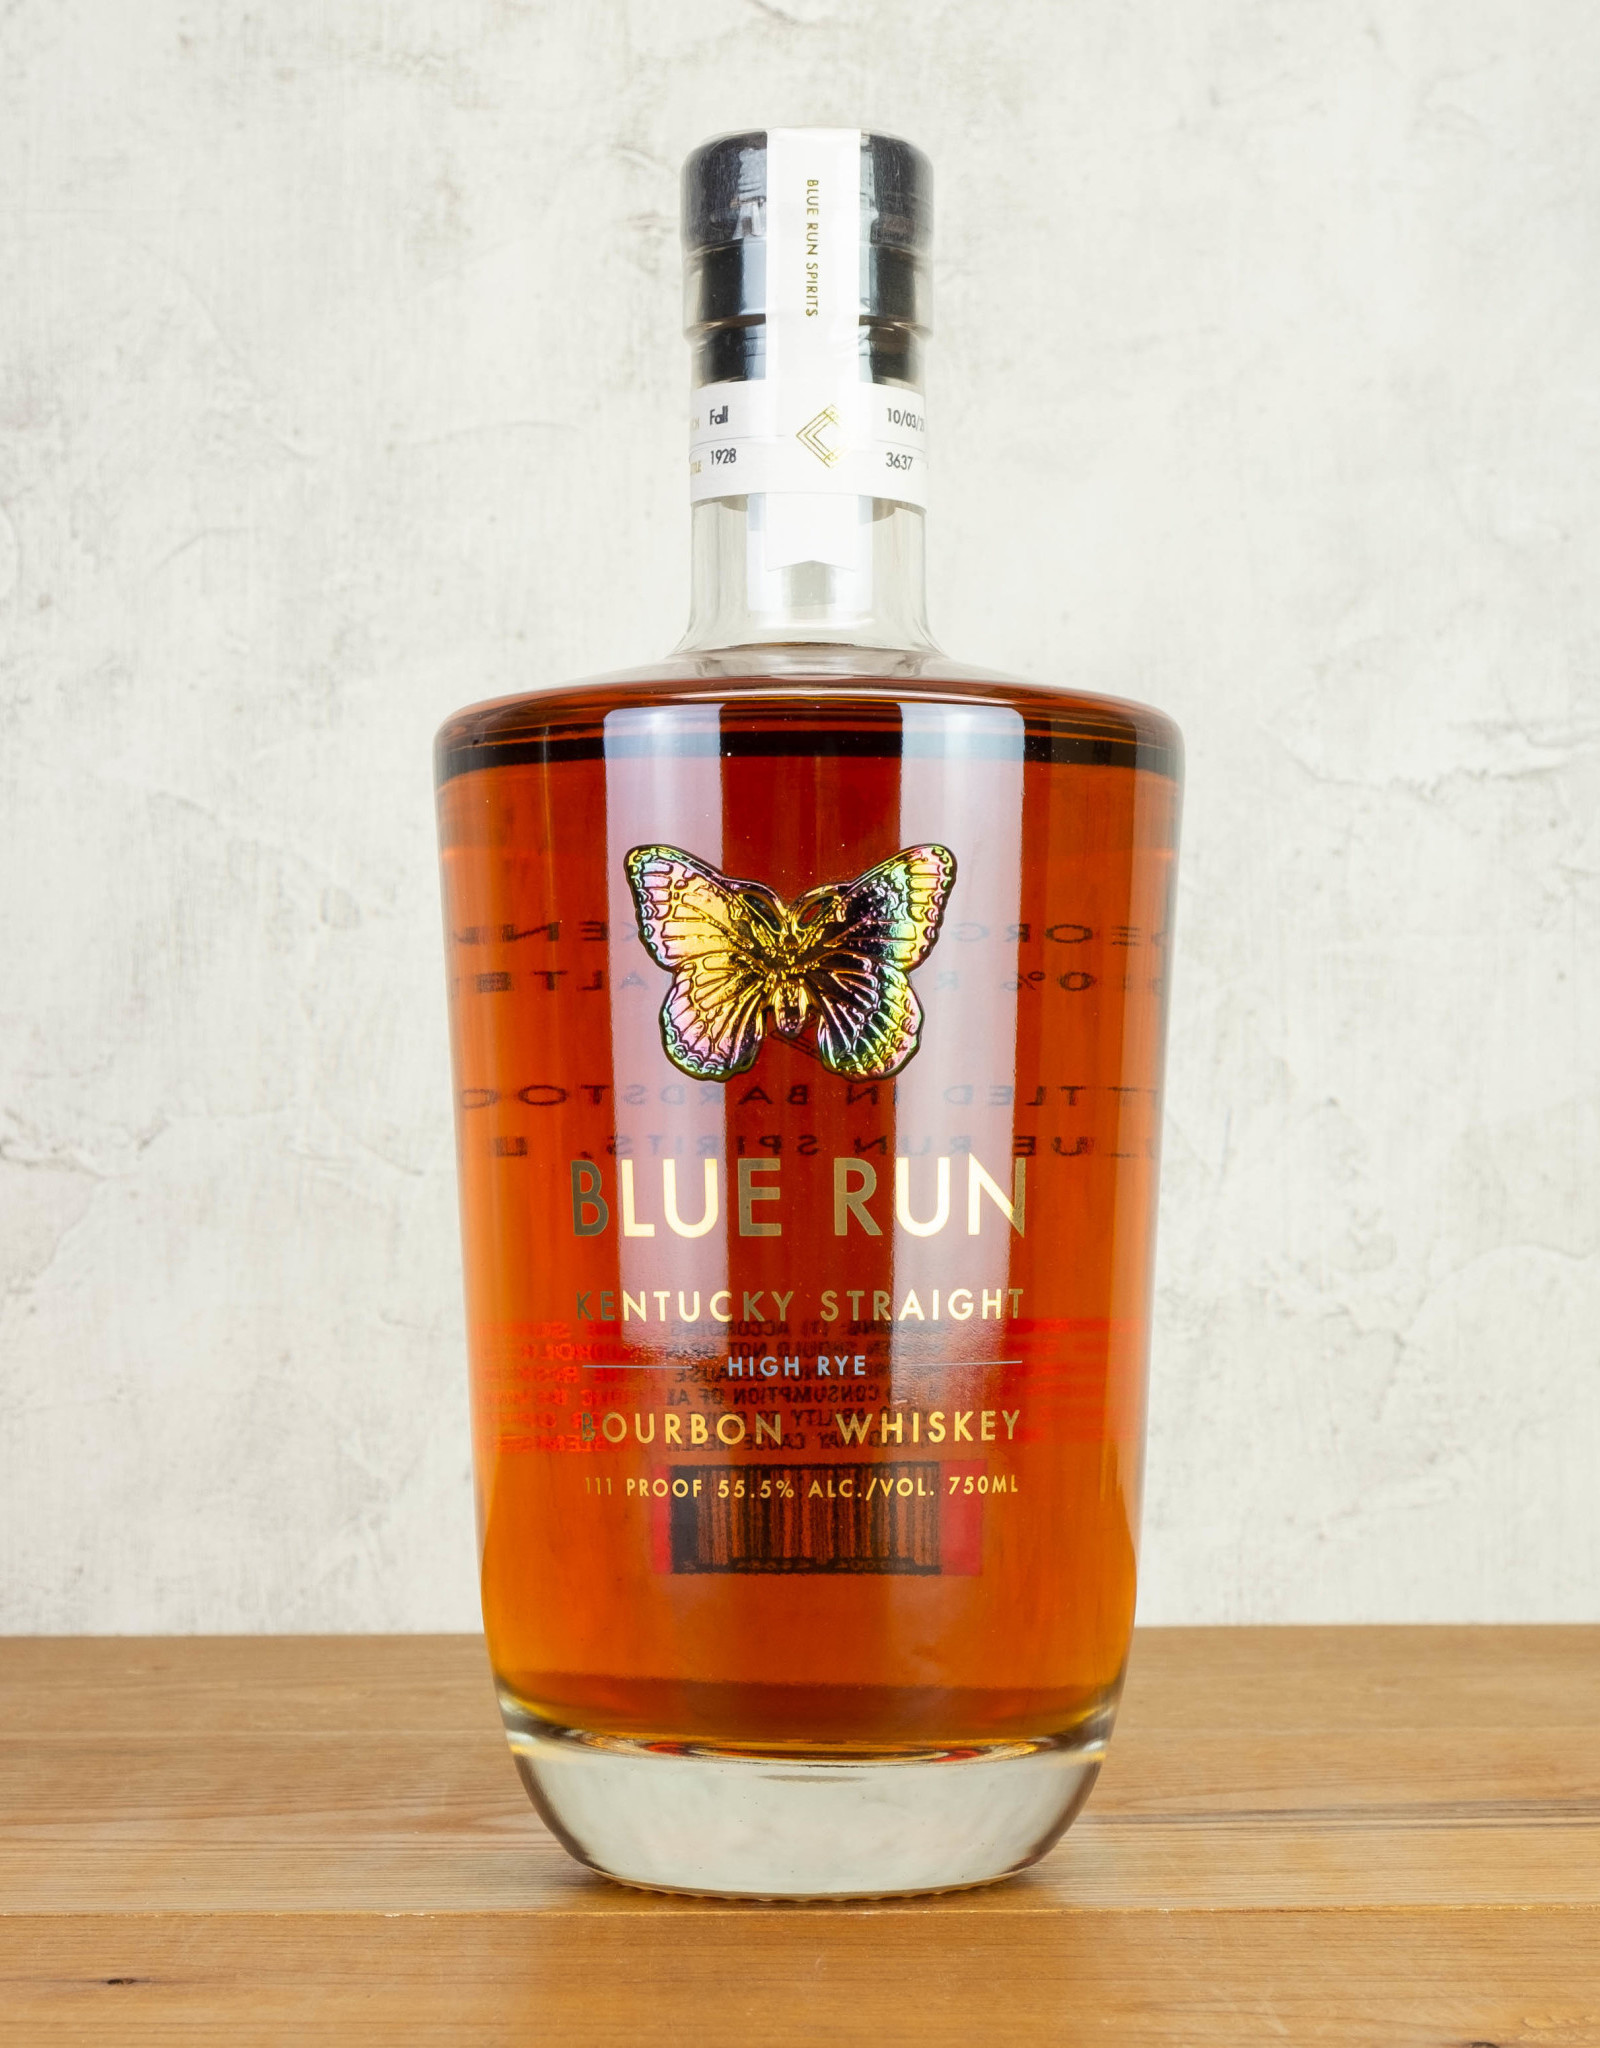 Blue Run High Rye Kentucky Bourbon